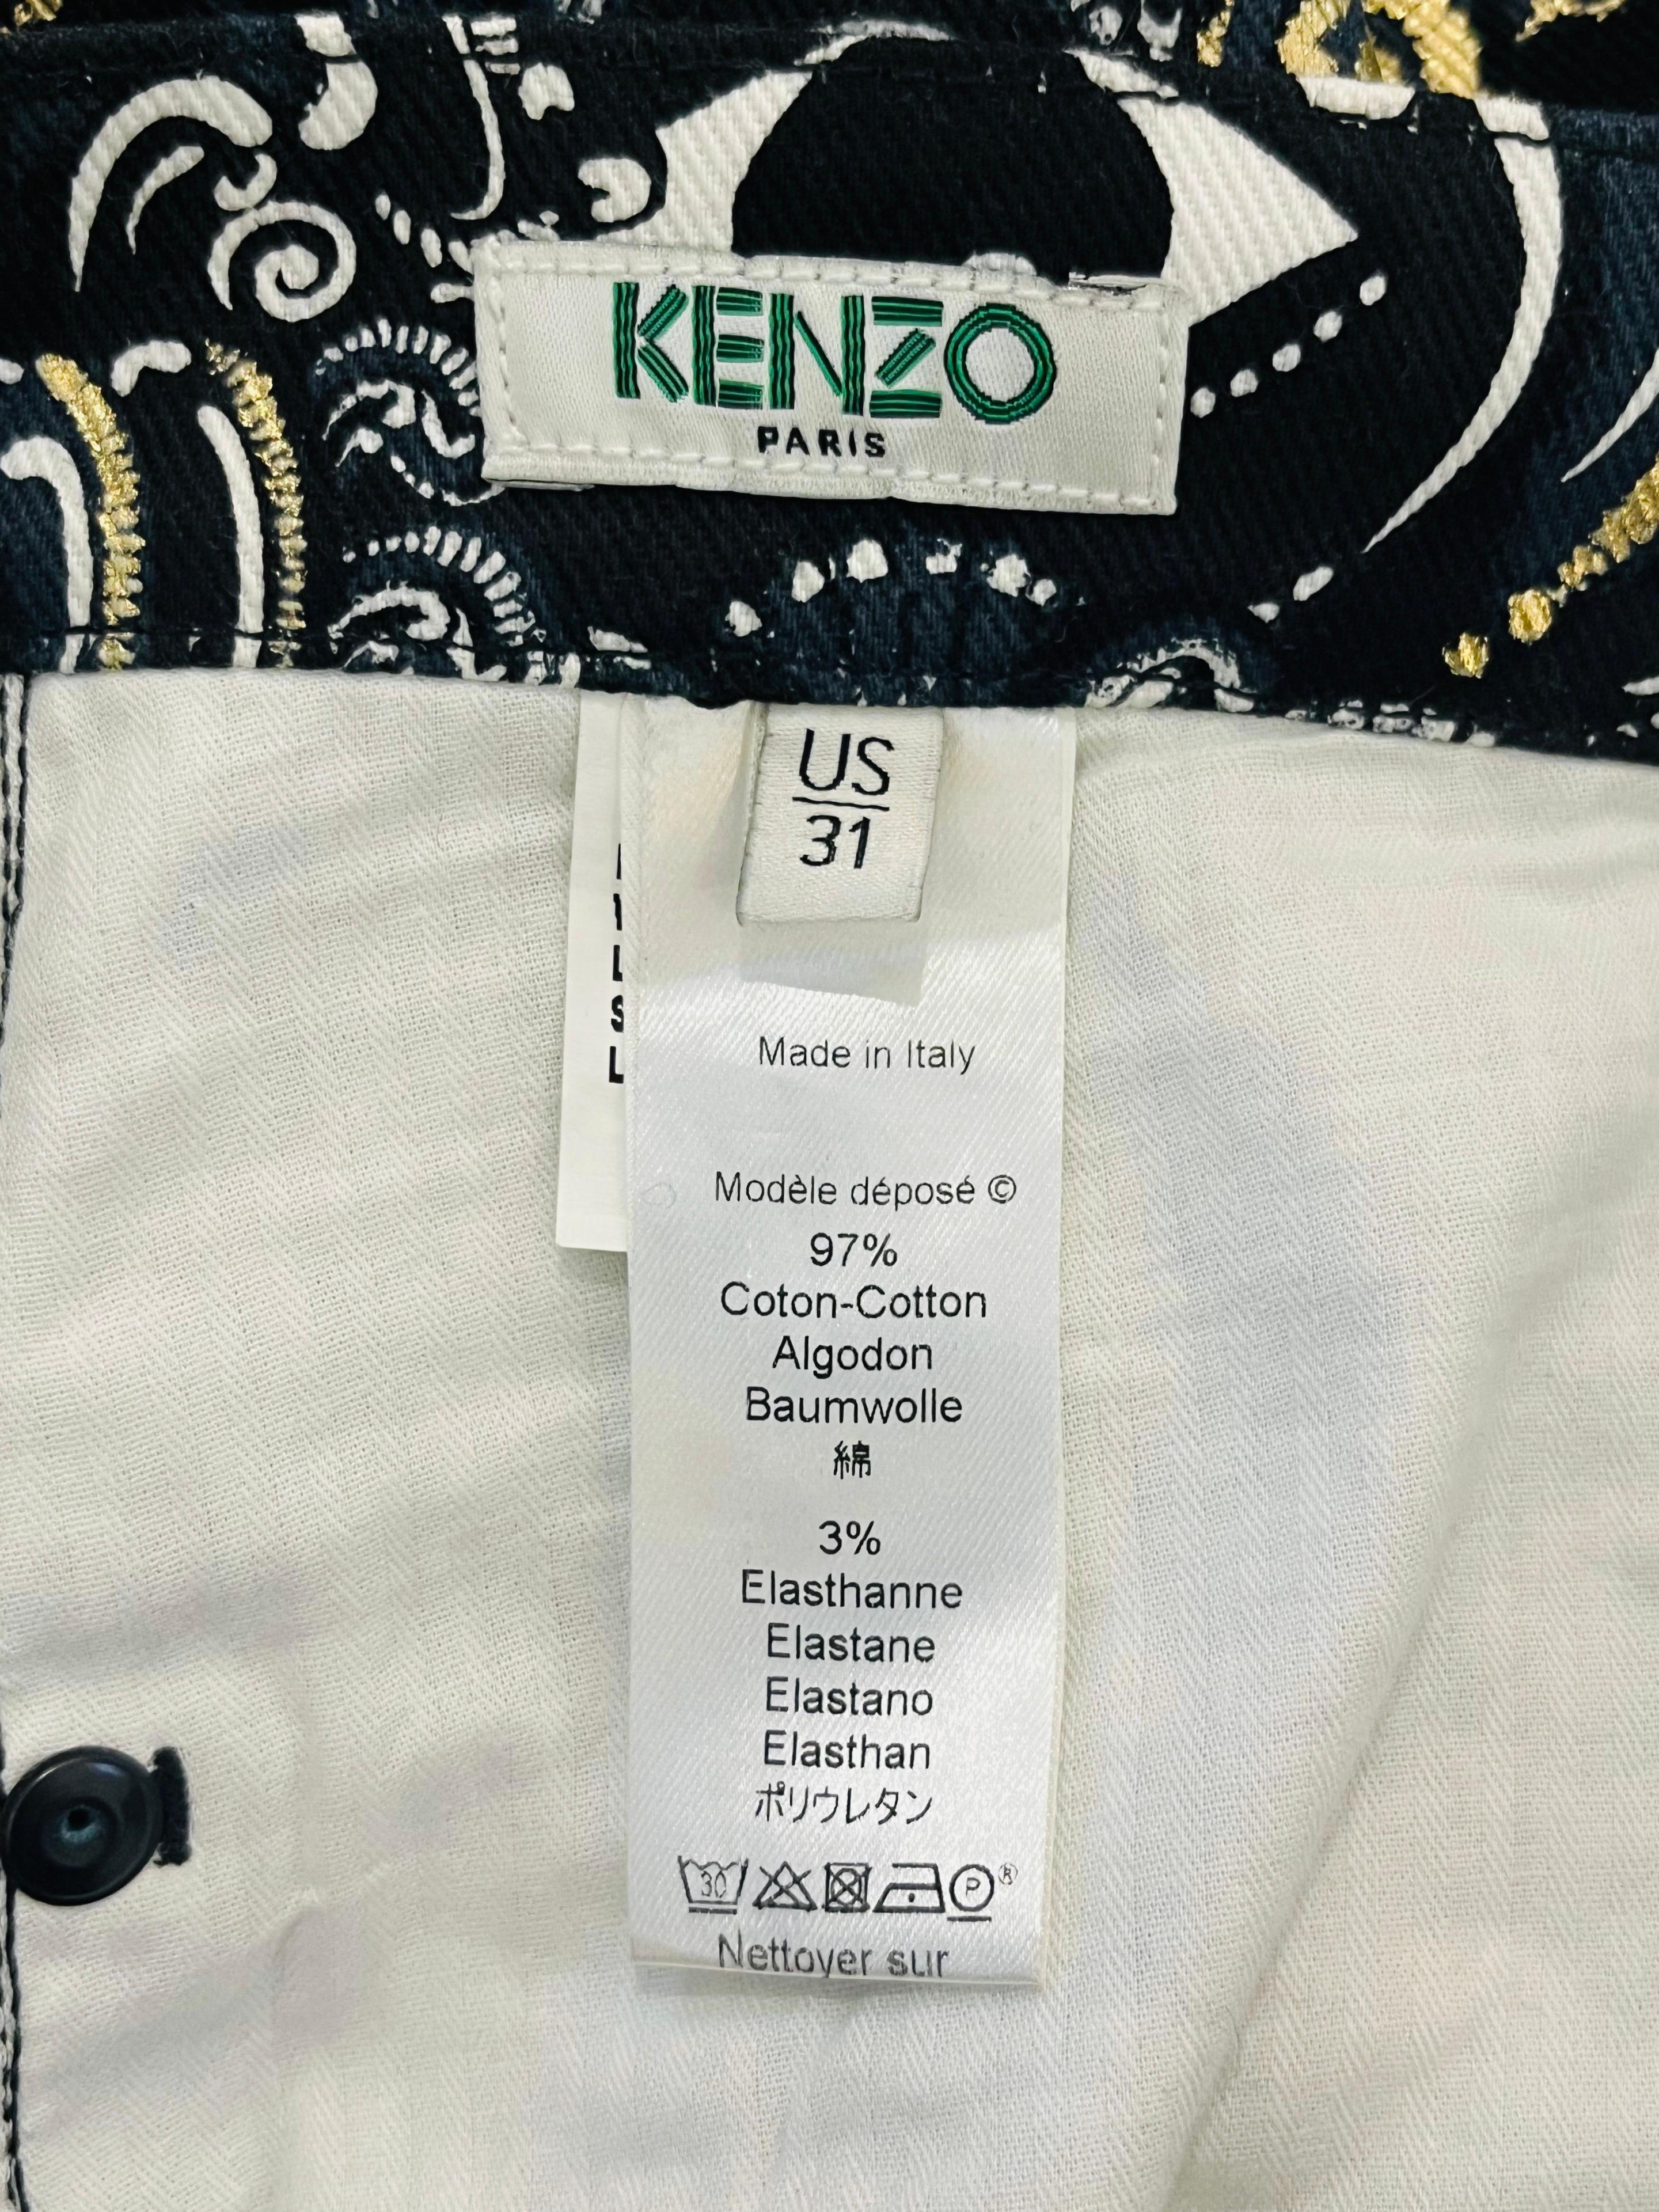 Kenzo 'Eye' Motif Paisley Print Cotton Trousers For Sale 2